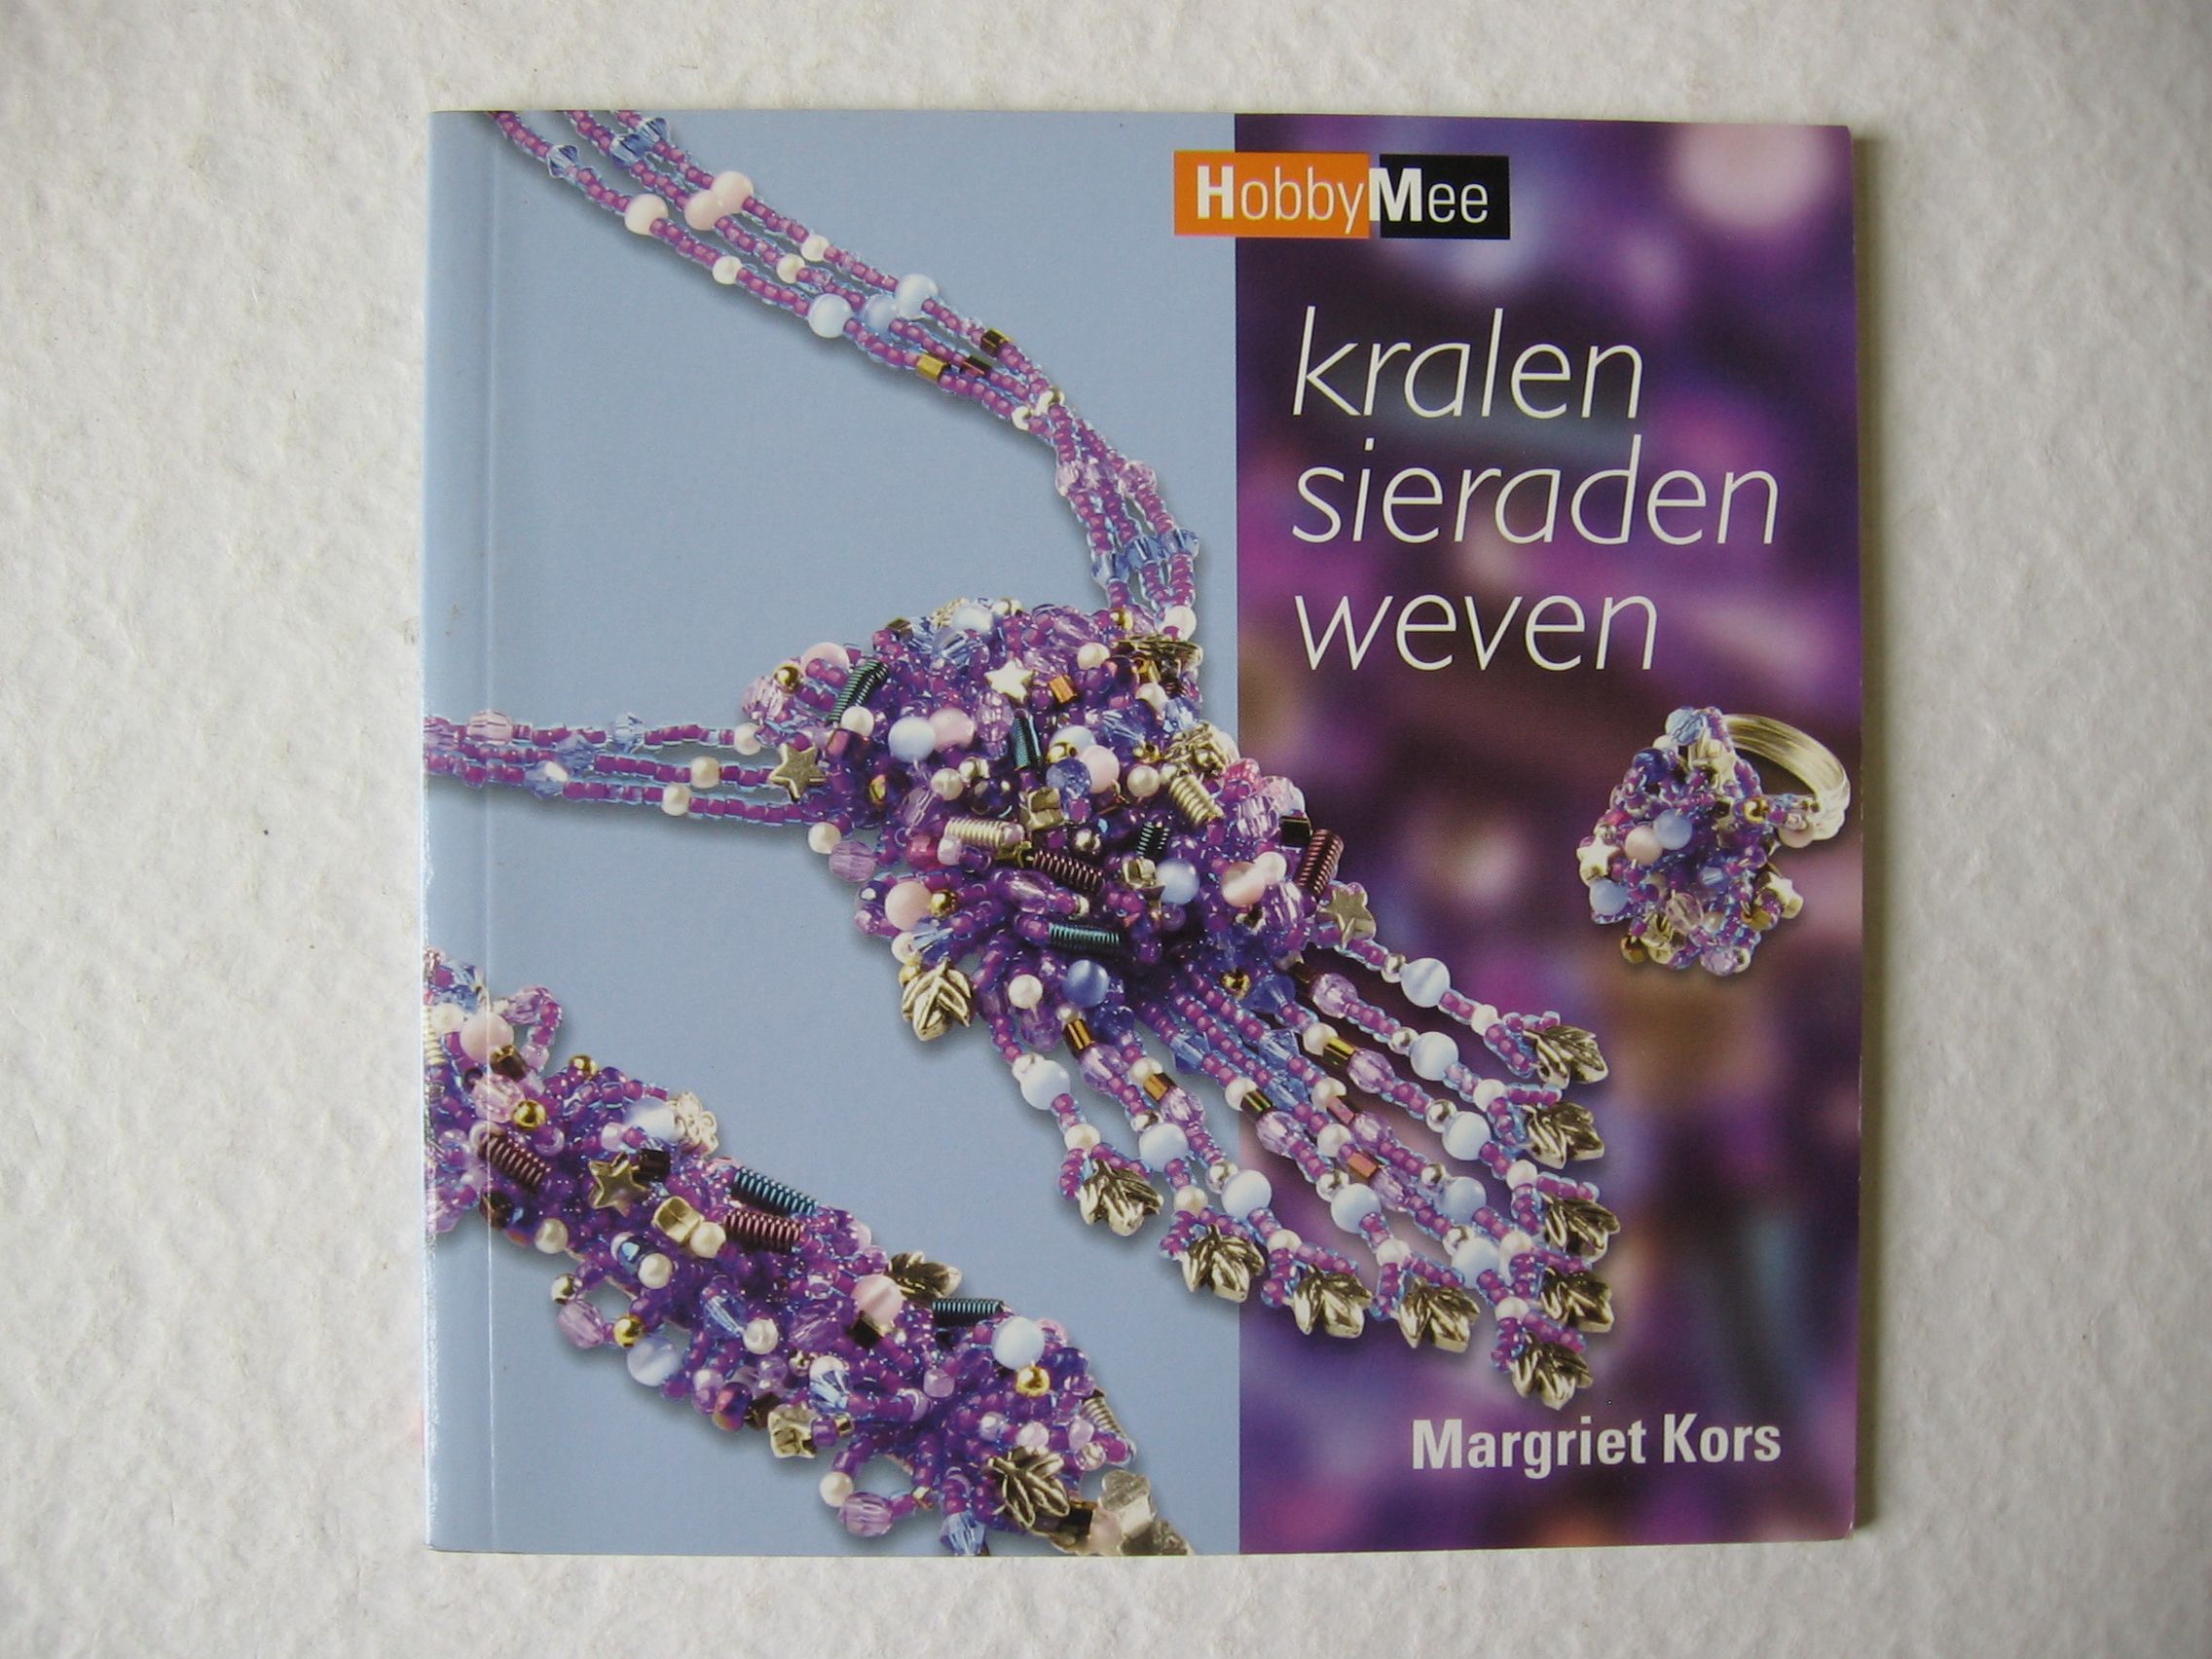 smokkel voorspelling kleur Kralen sieraden weven. – Kreatiefboek.frl